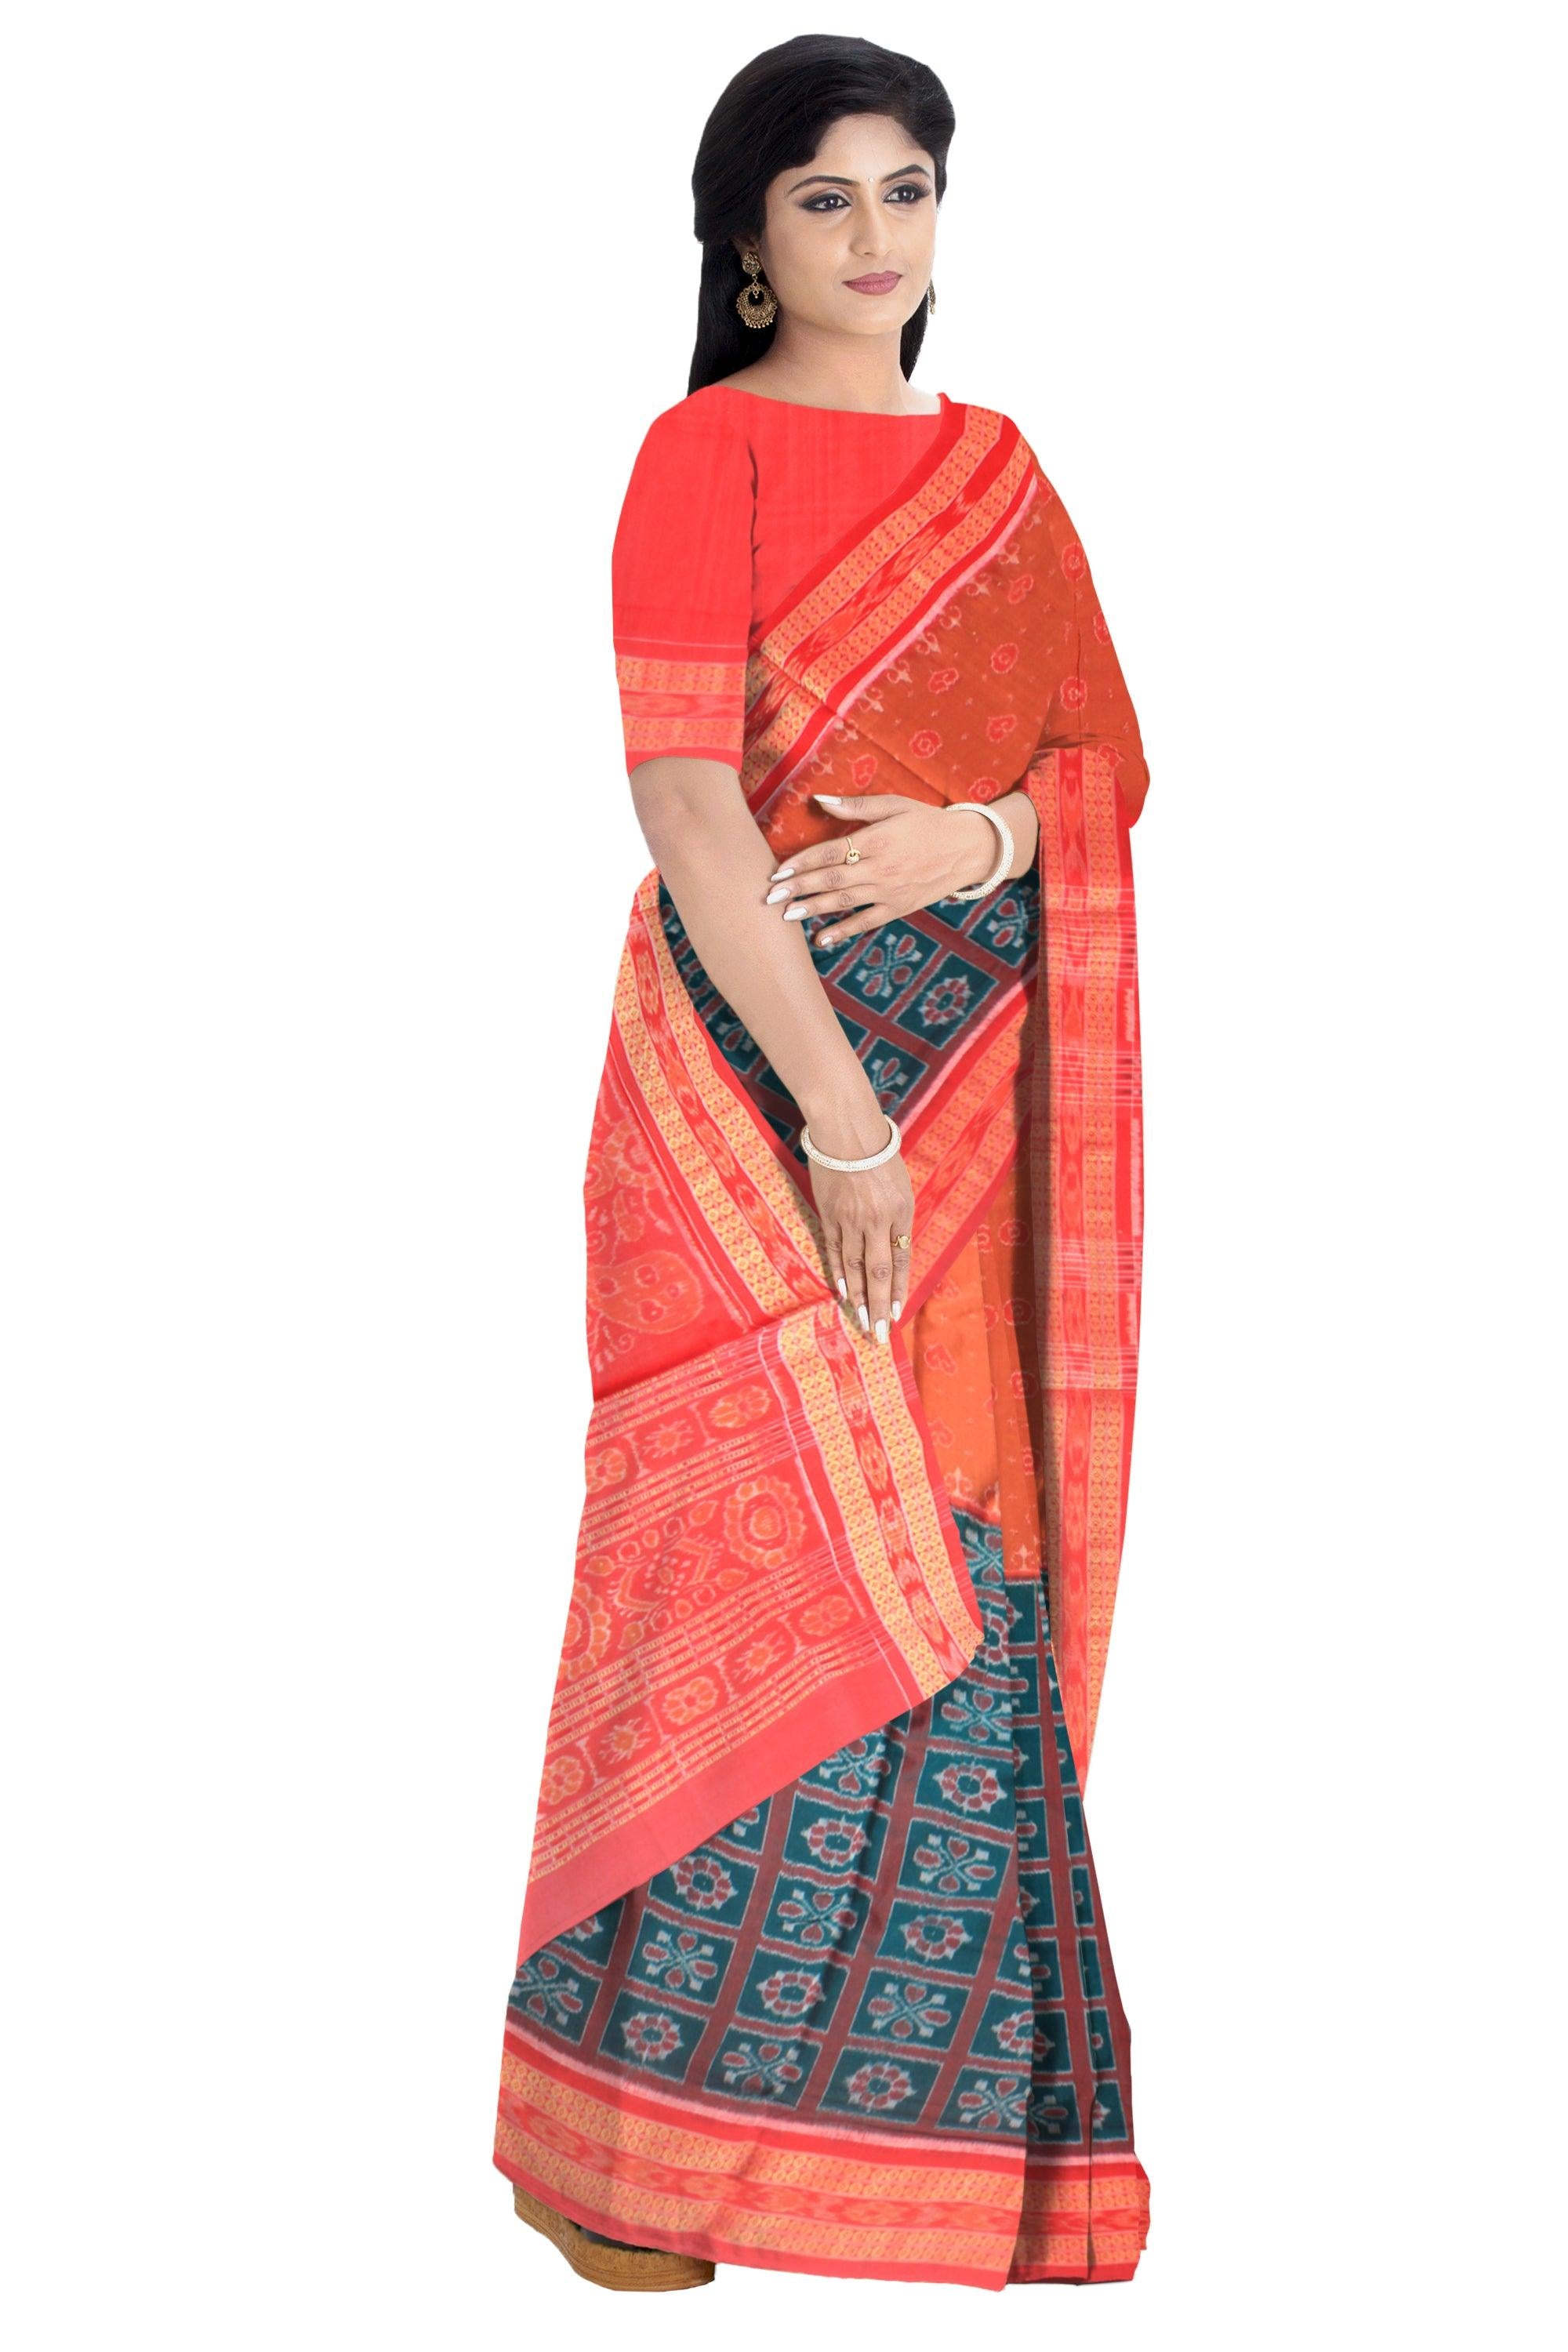 Dark Green and Orange  Sonepur  cotton saree, with blouse piece. - Koshali Arts & Crafts Enterprise